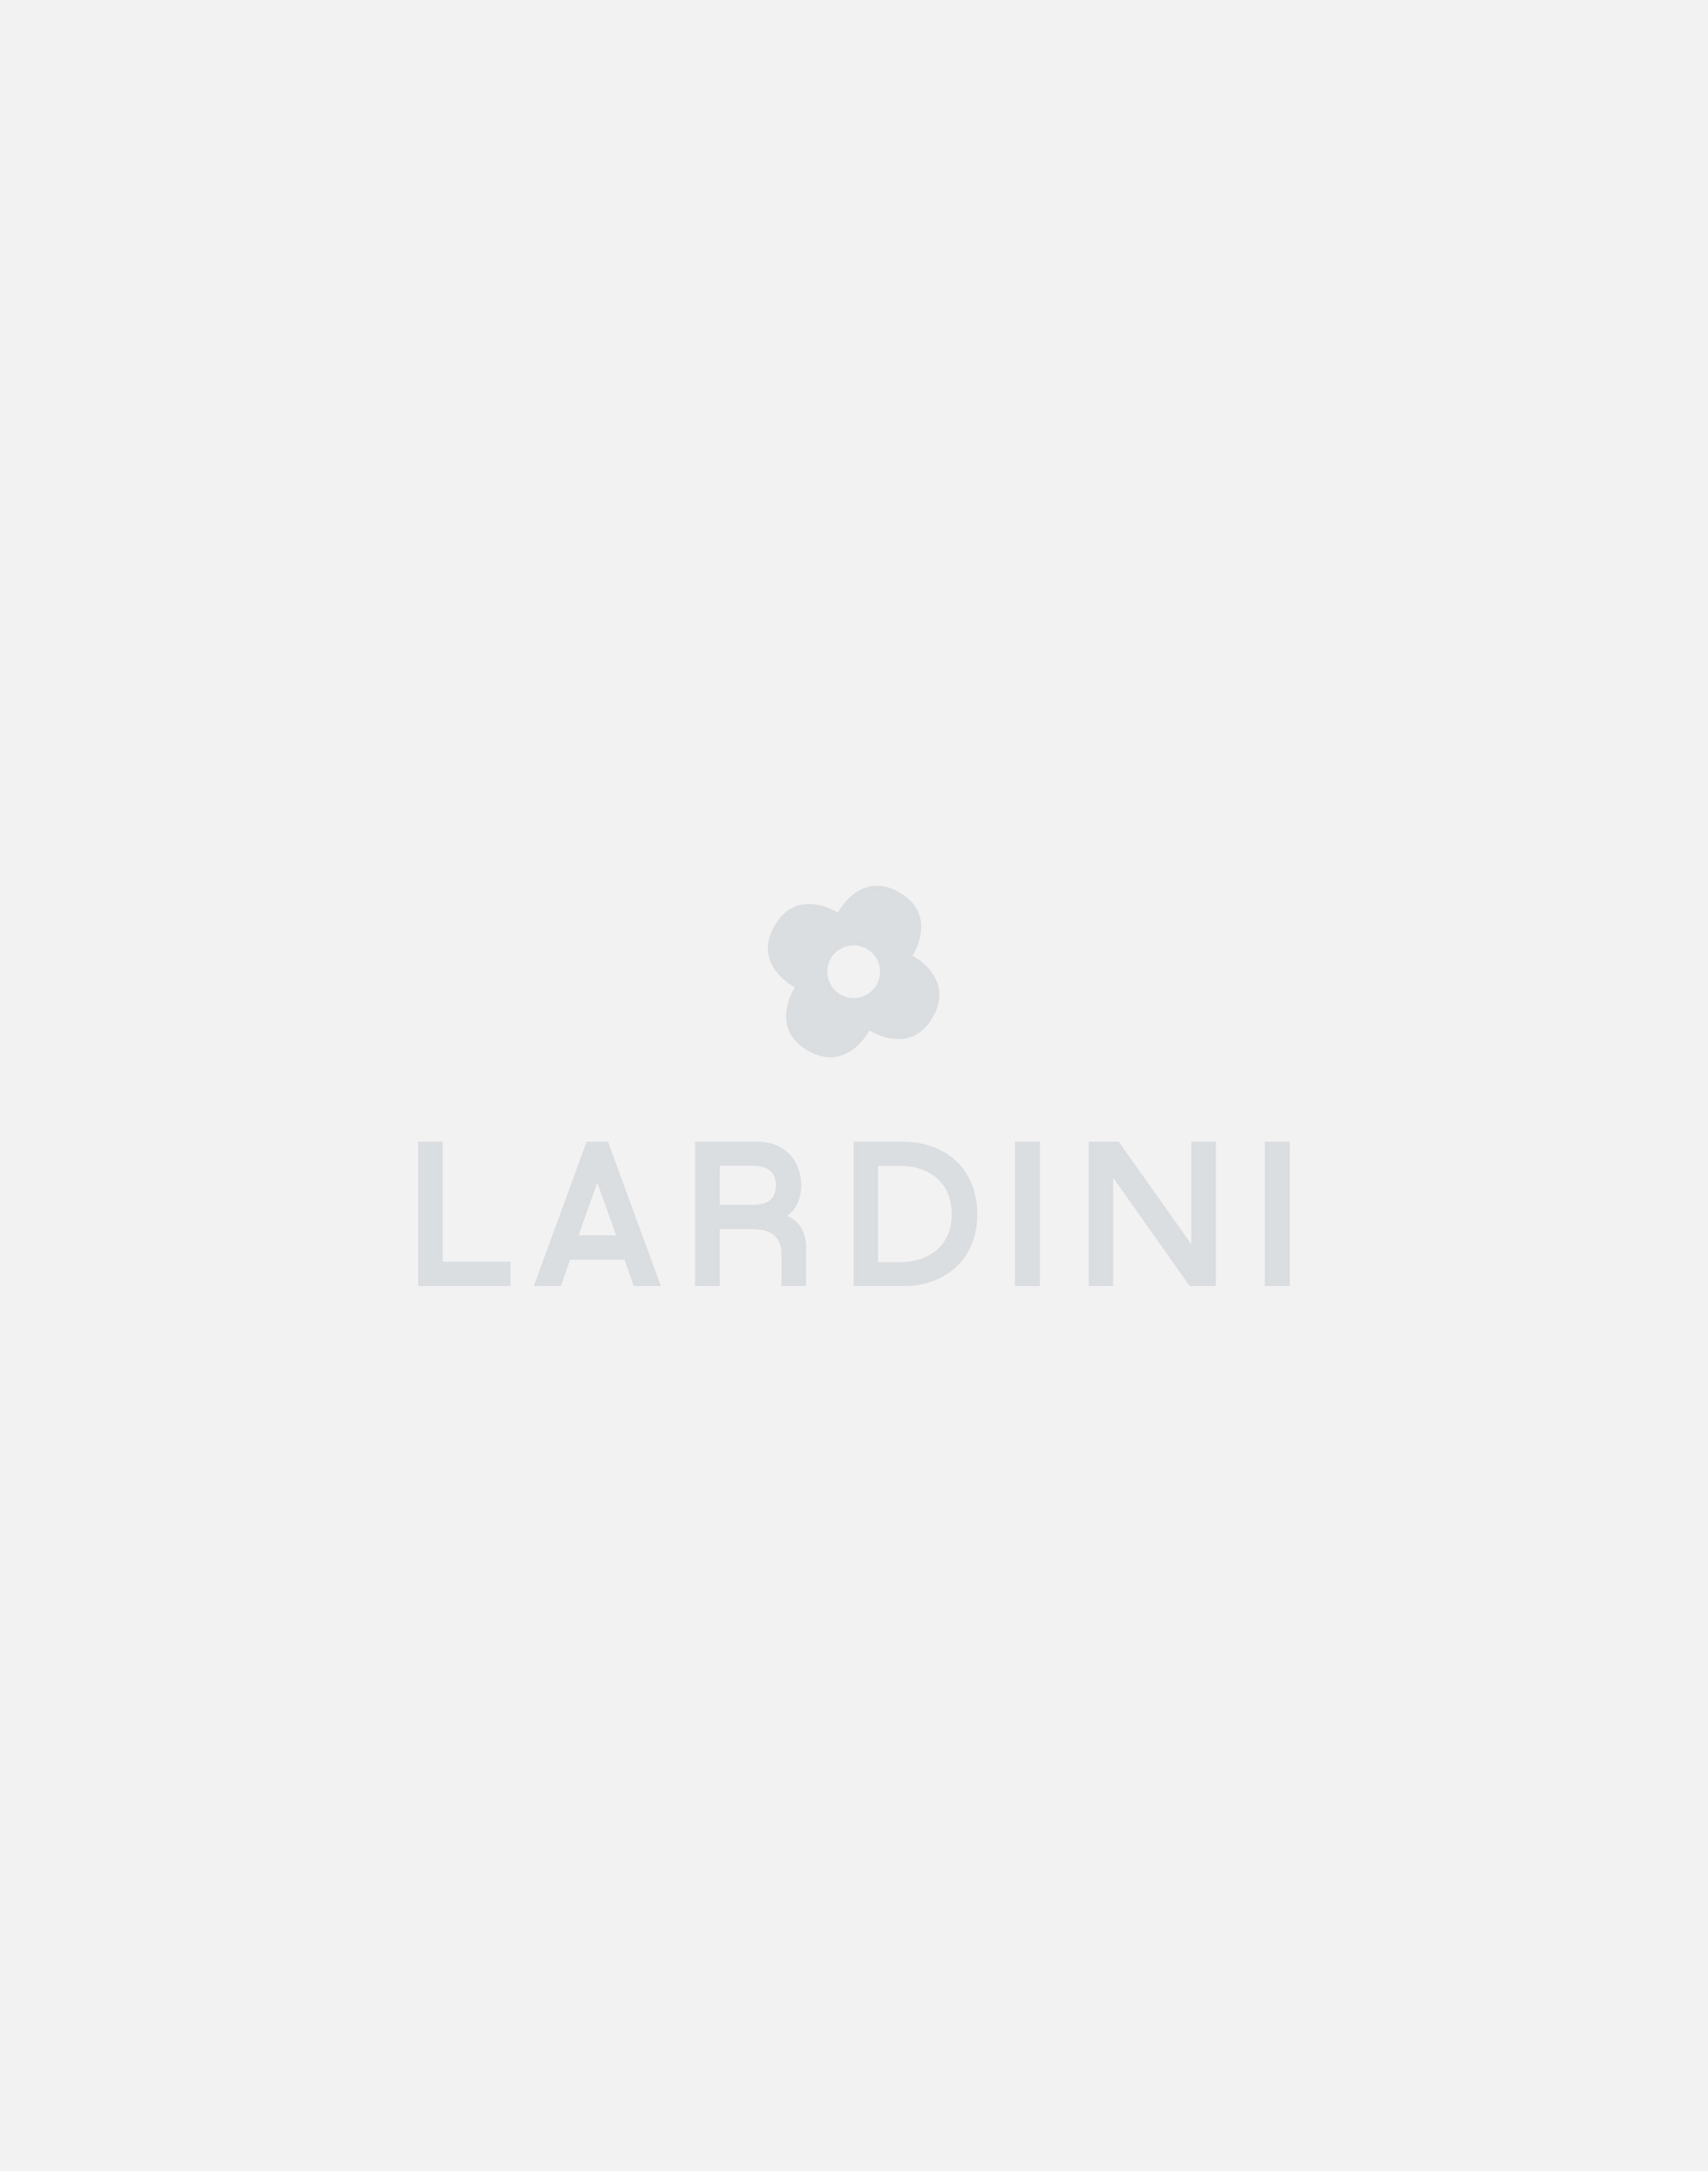 Single-breasted knit jacket - Luigi Lardini capsule